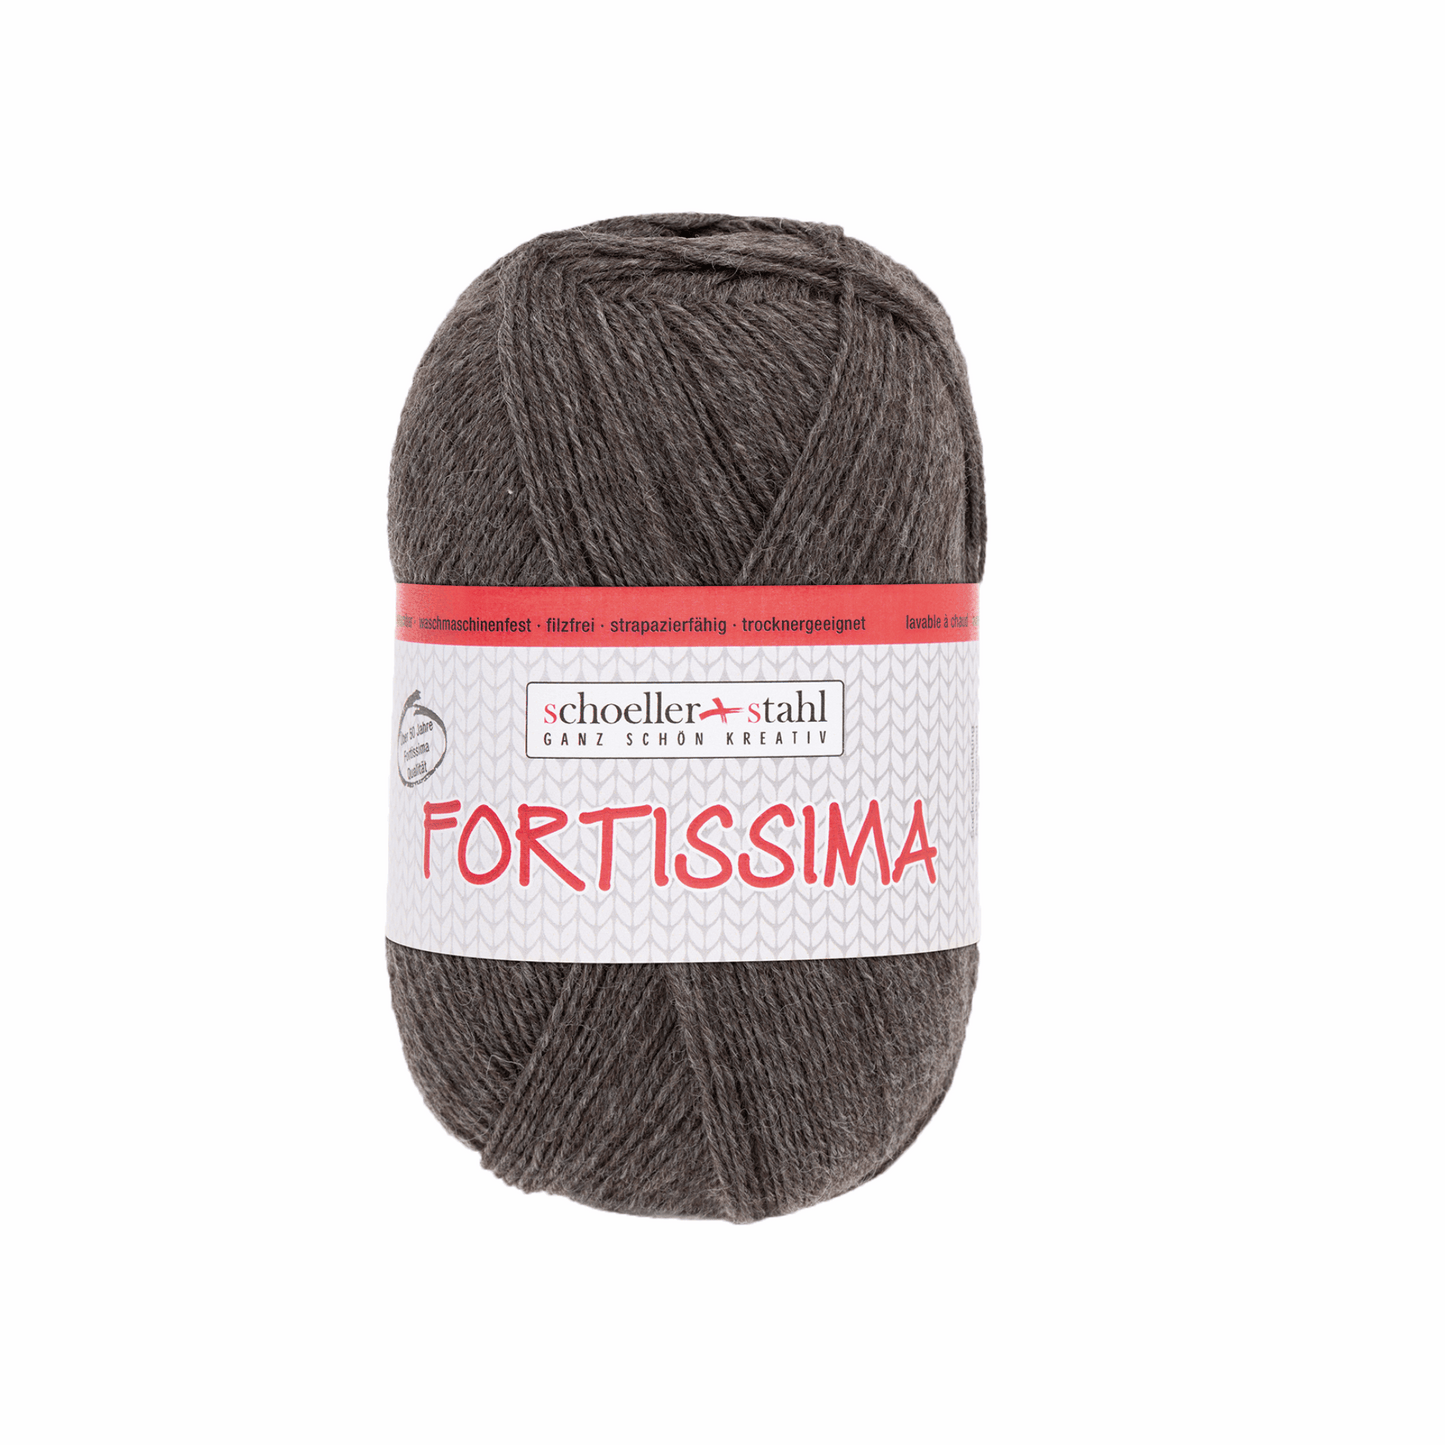 Fortissima socka 100, 90038, Farbe 2070, mokka meliert.